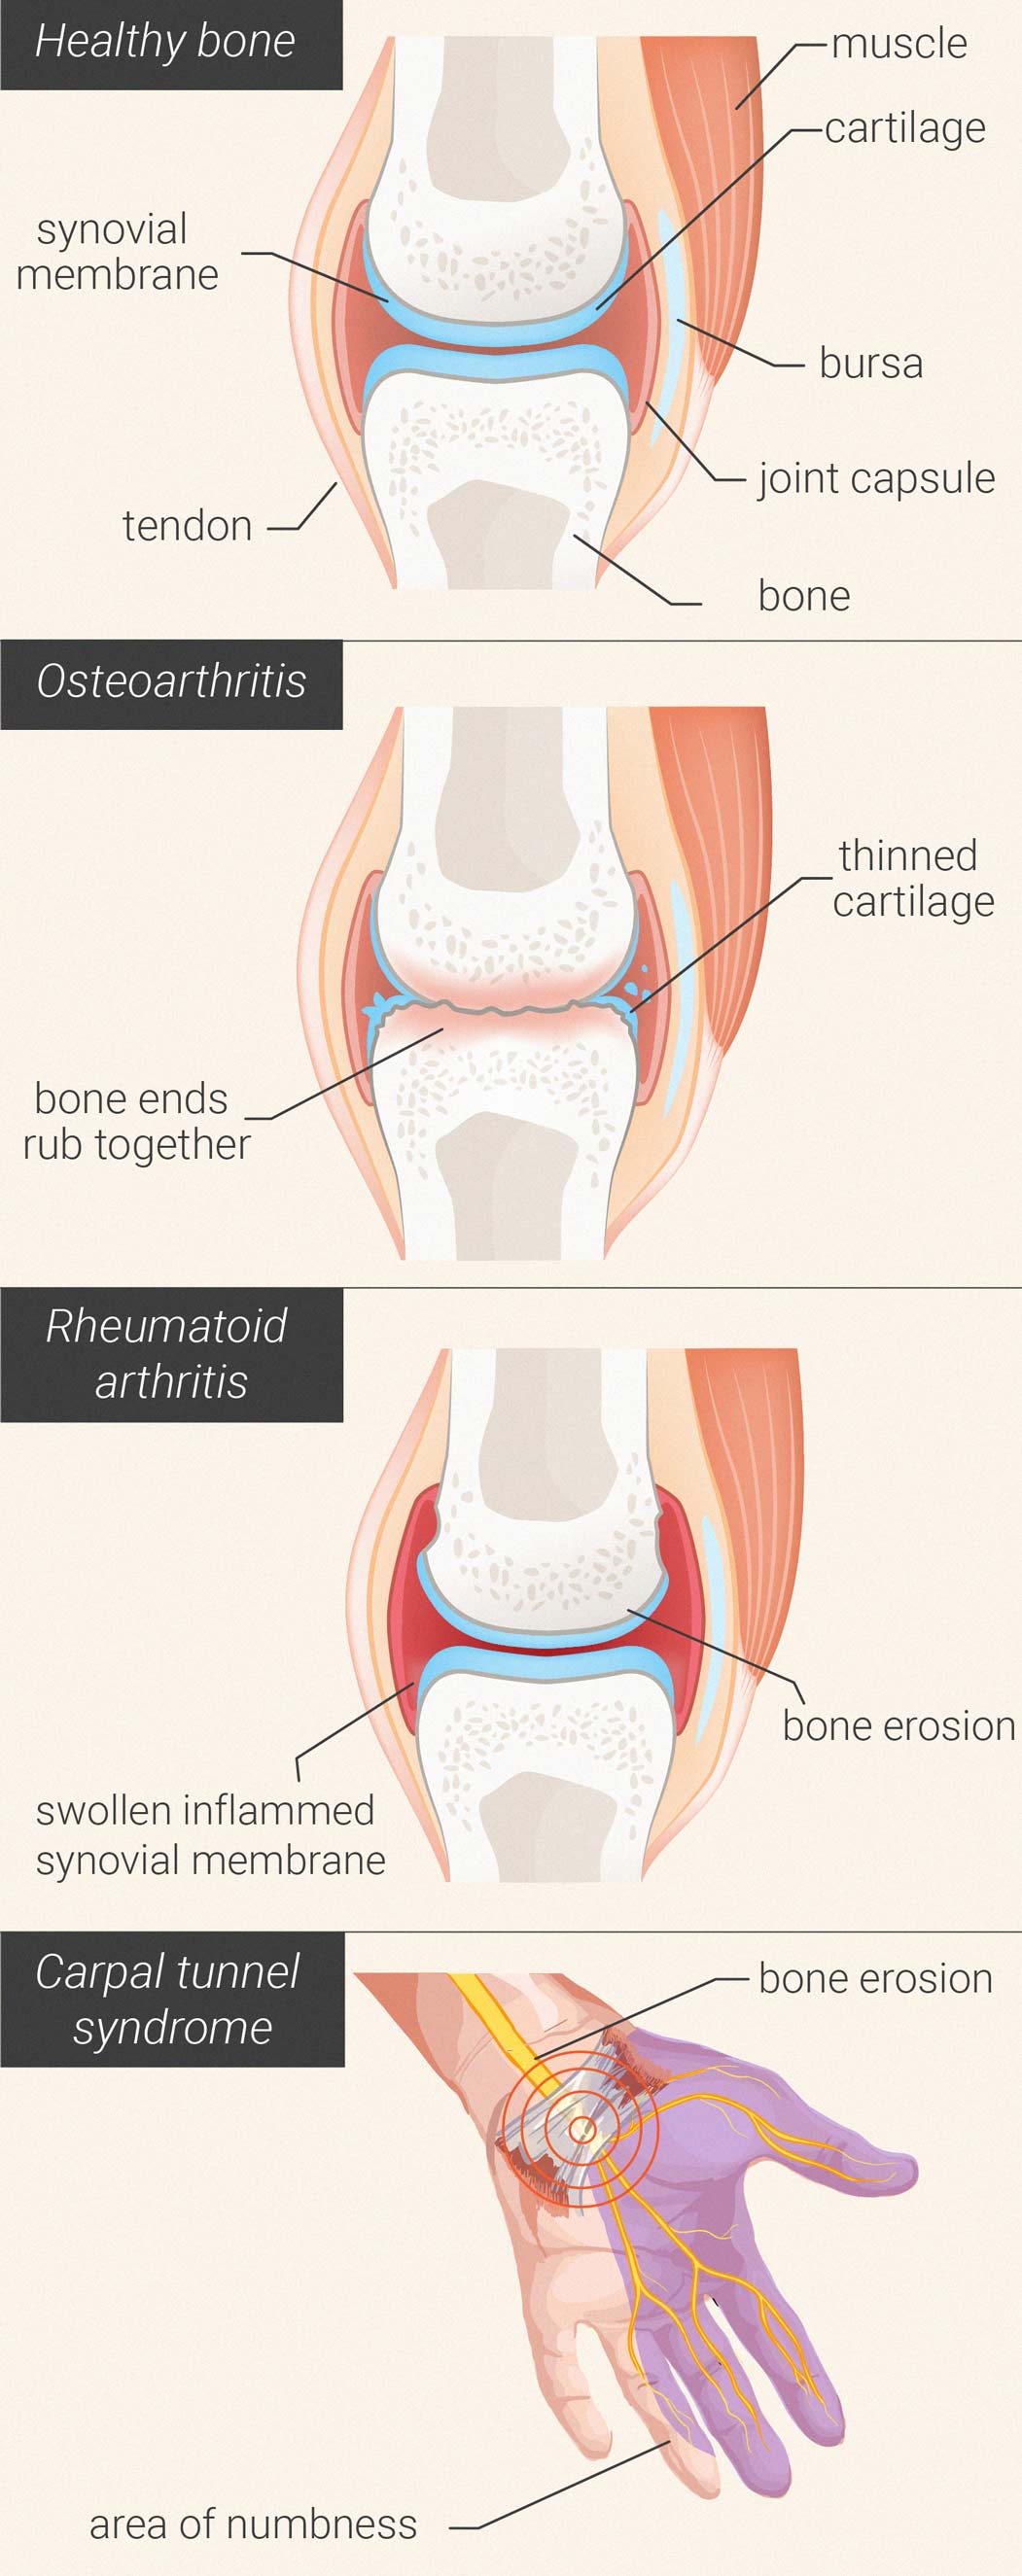 Kan wiet de pijn en ontstekingen bij artritis verminderen?